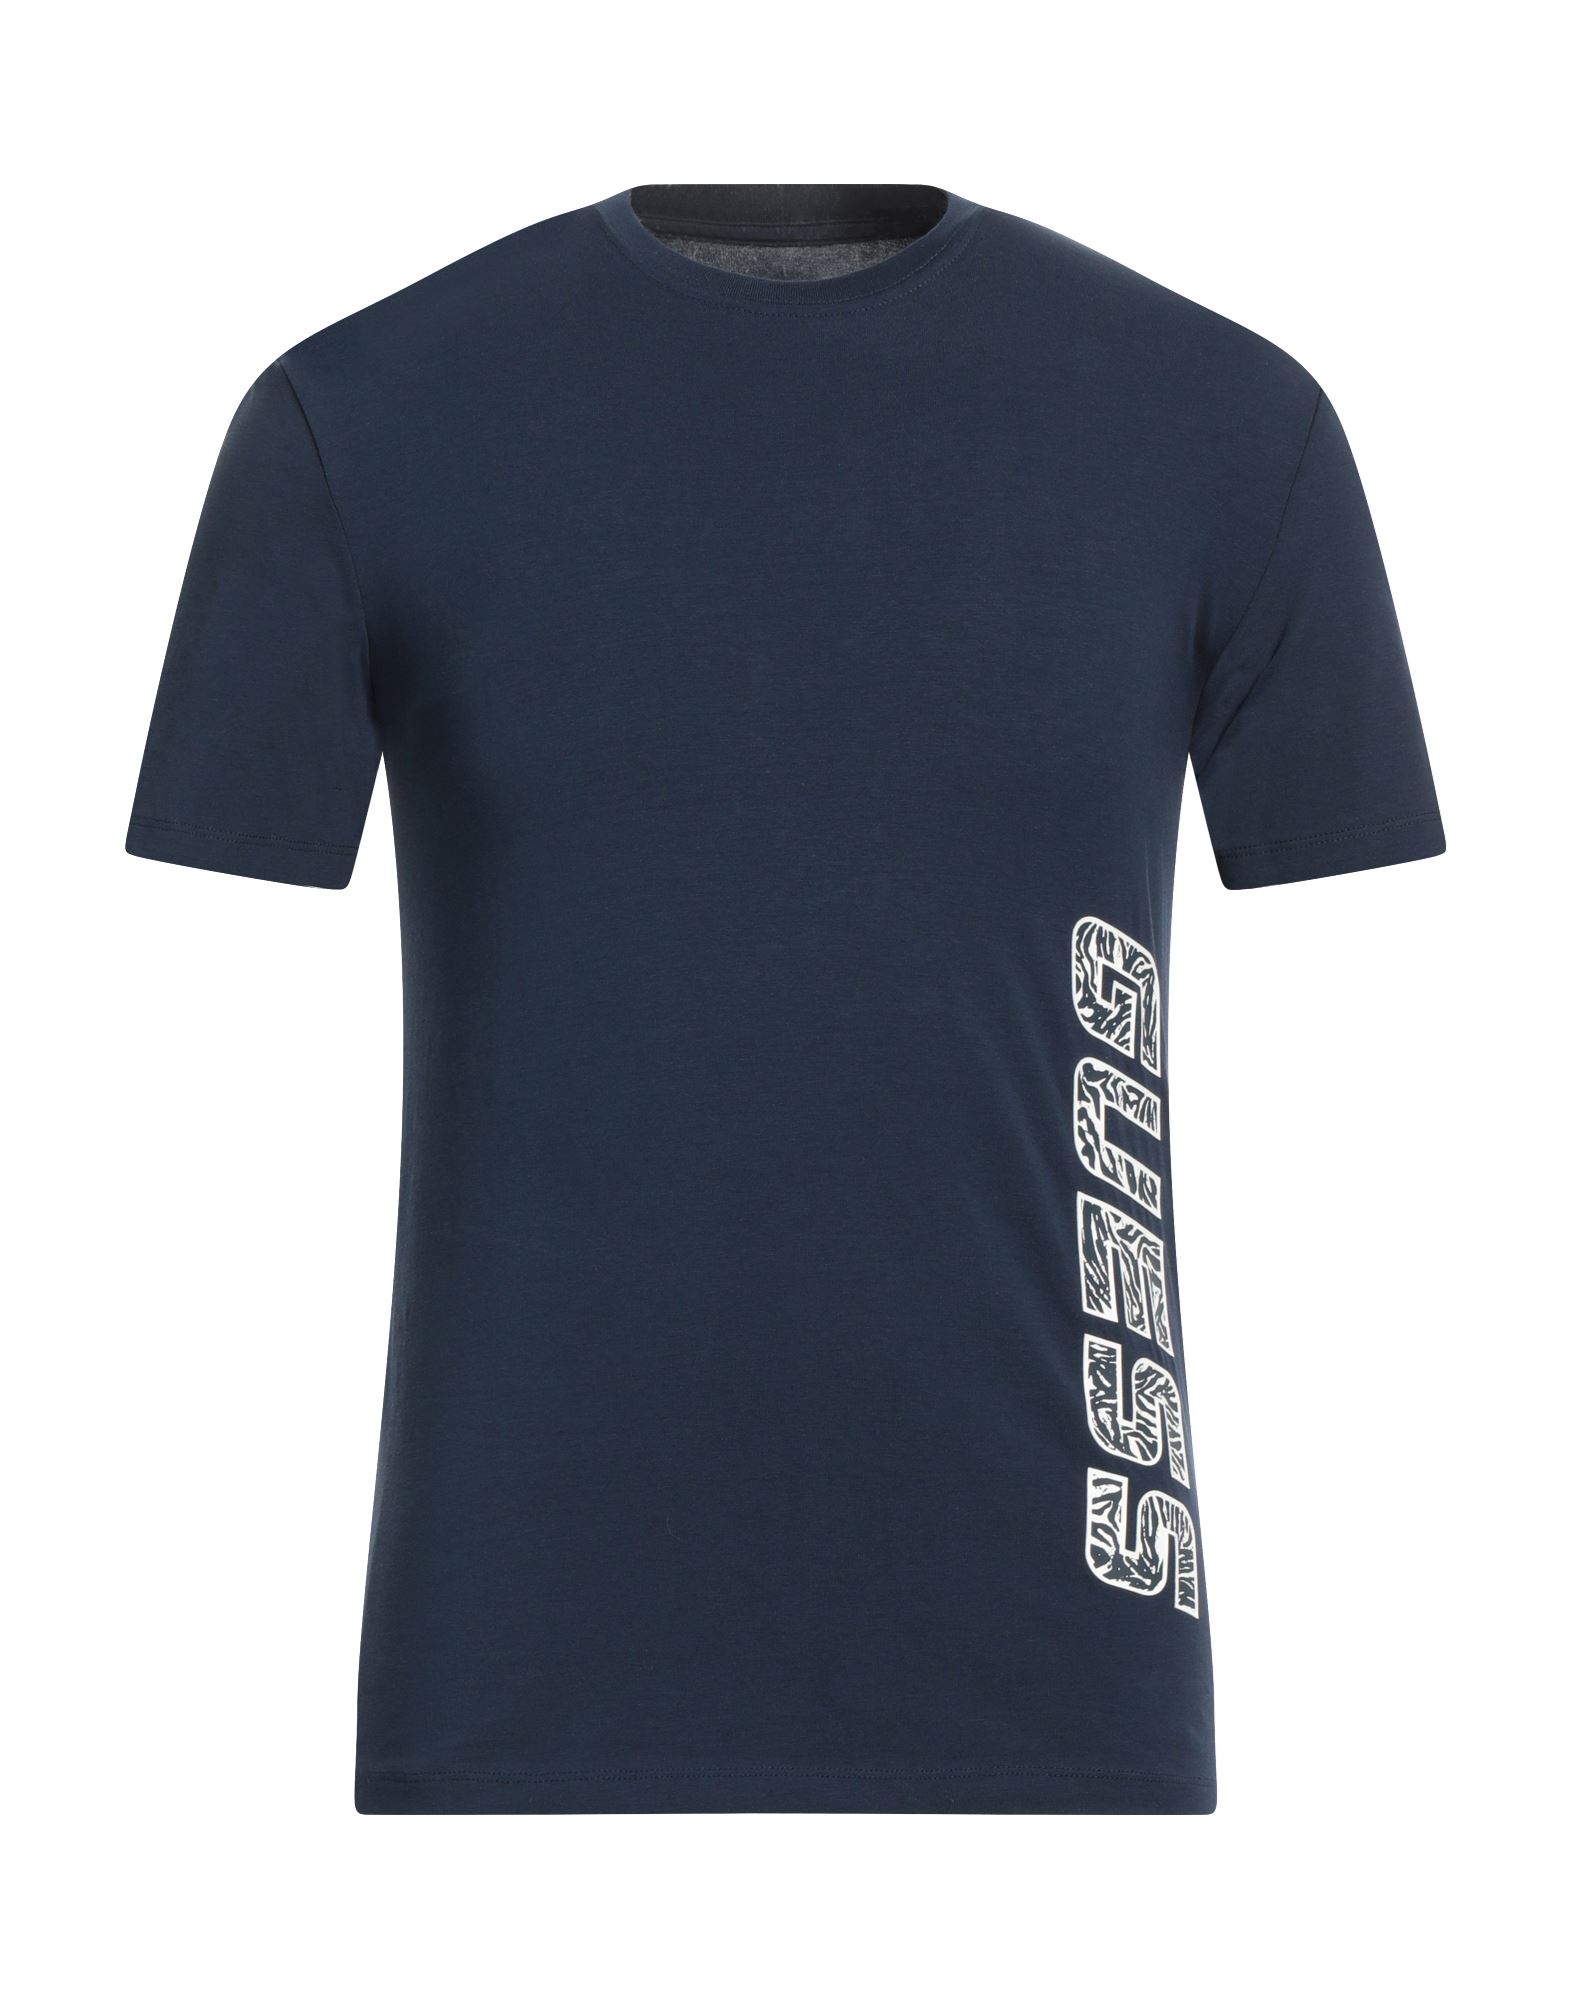 GUESS T-shirts Herren Nachtblau von GUESS